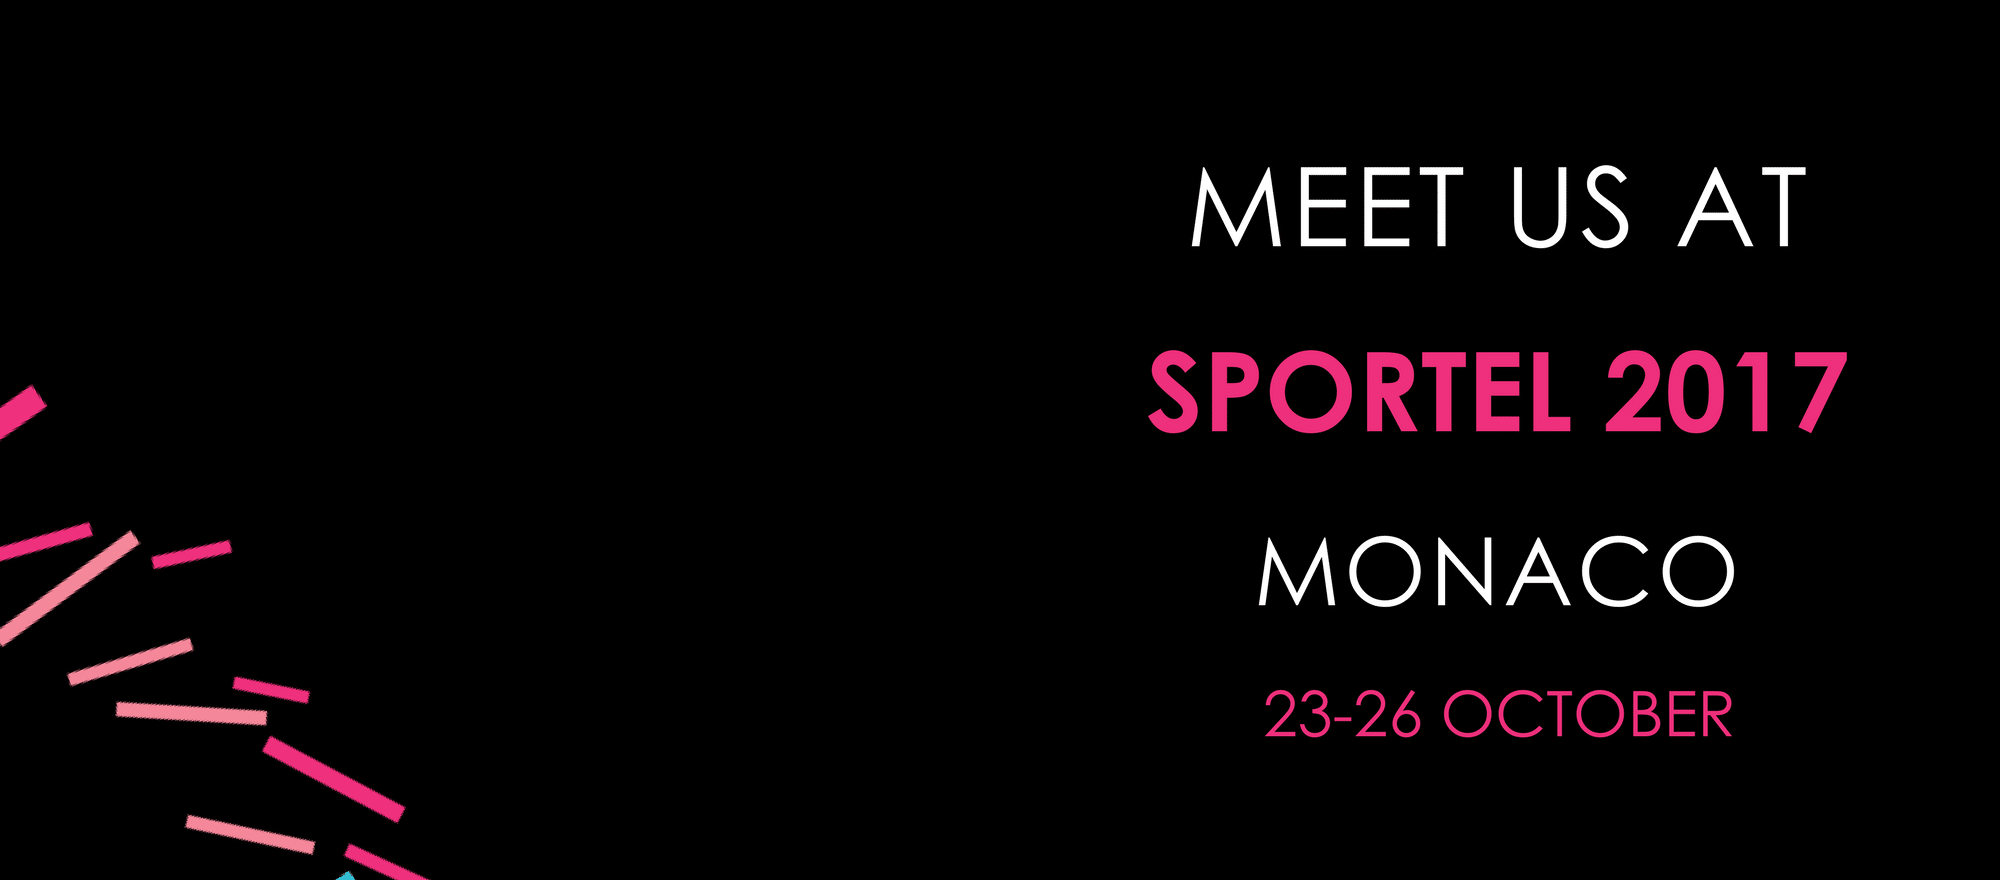 Sportel Monaco 2017